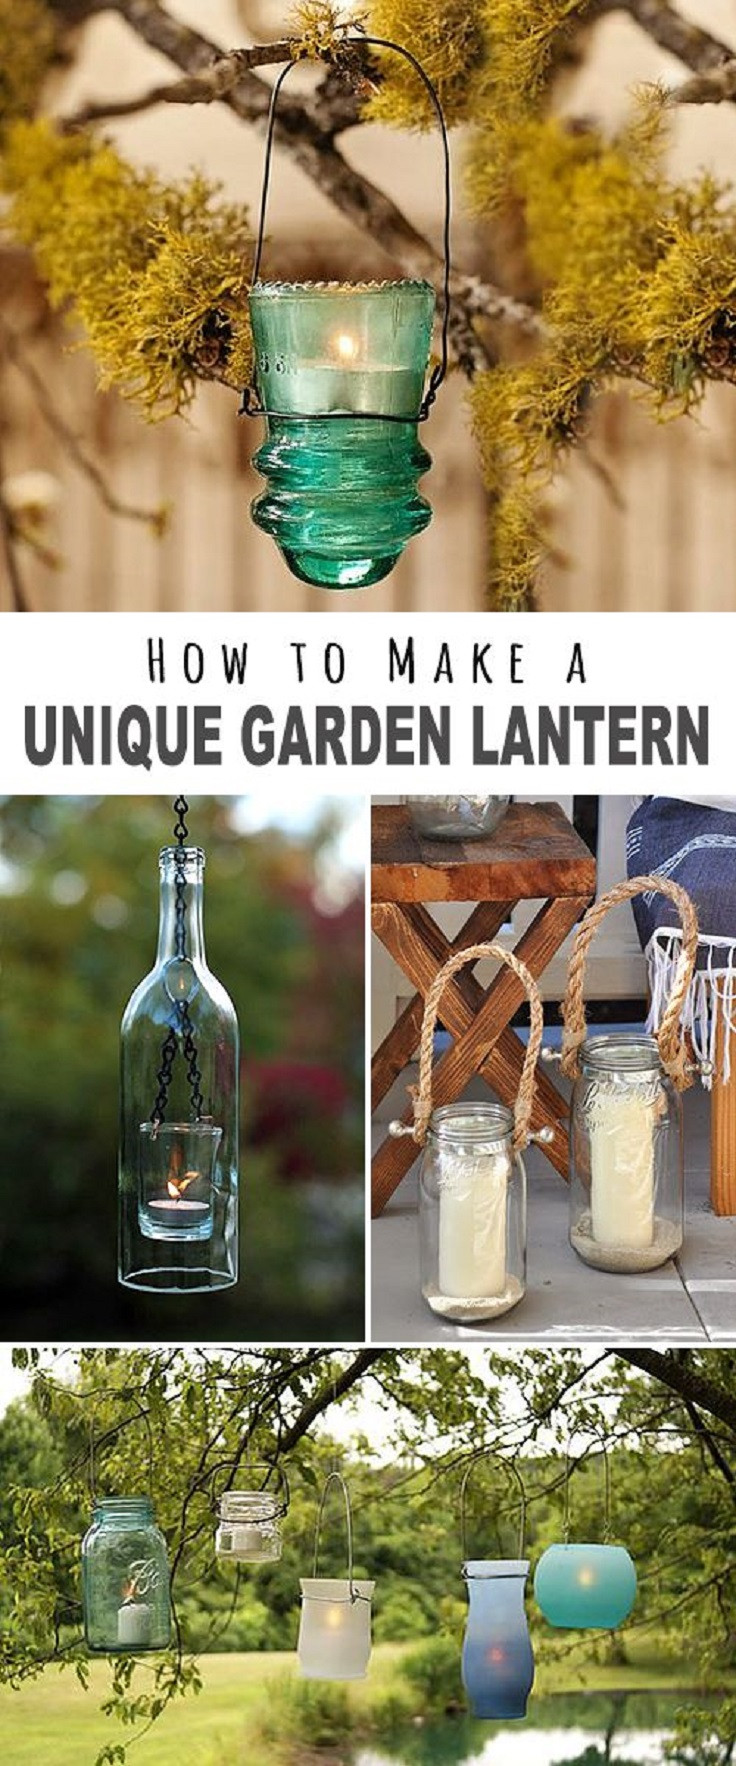 DIY Outdoor Lanterns
 9 Hyper Creative DIY Outdoor Lighting Ideas For Your Backyard